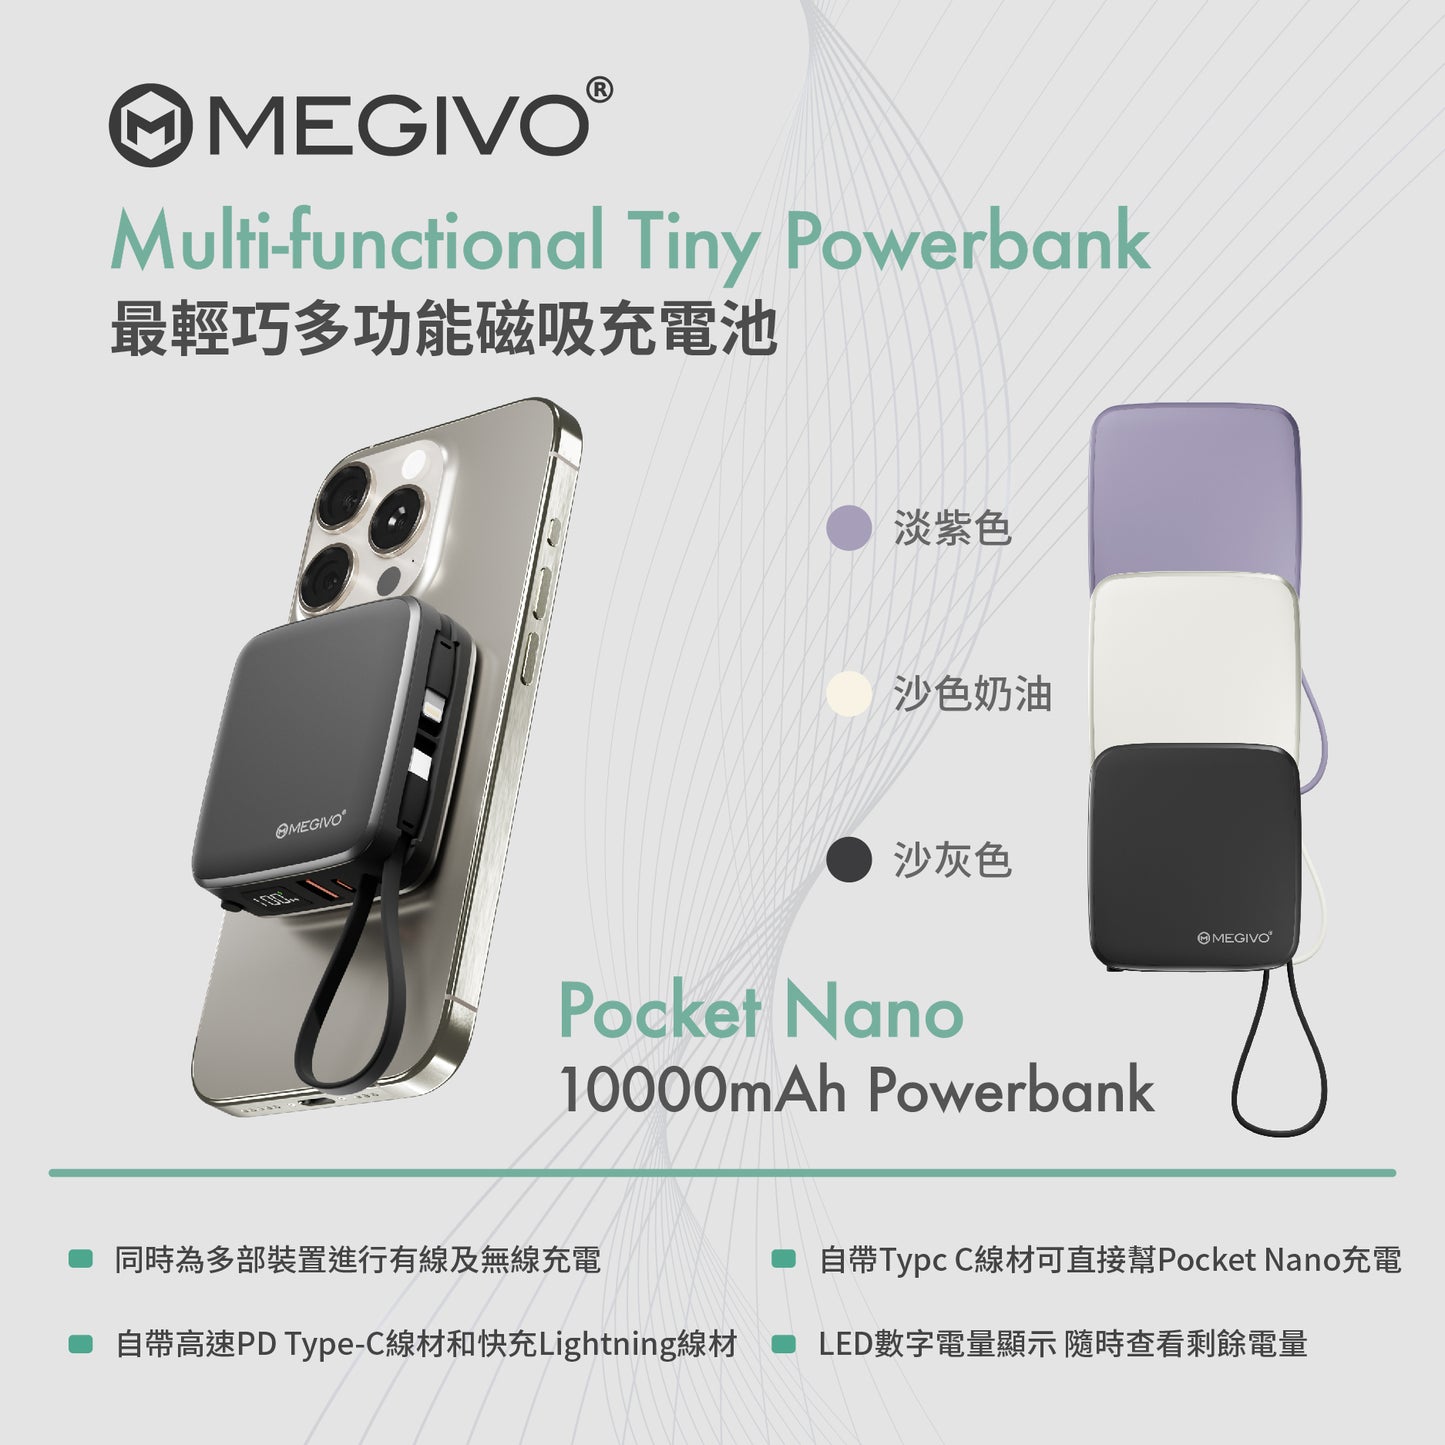 Pocket Nano 10,000mAh Multi-Functional Tiny Power Bank